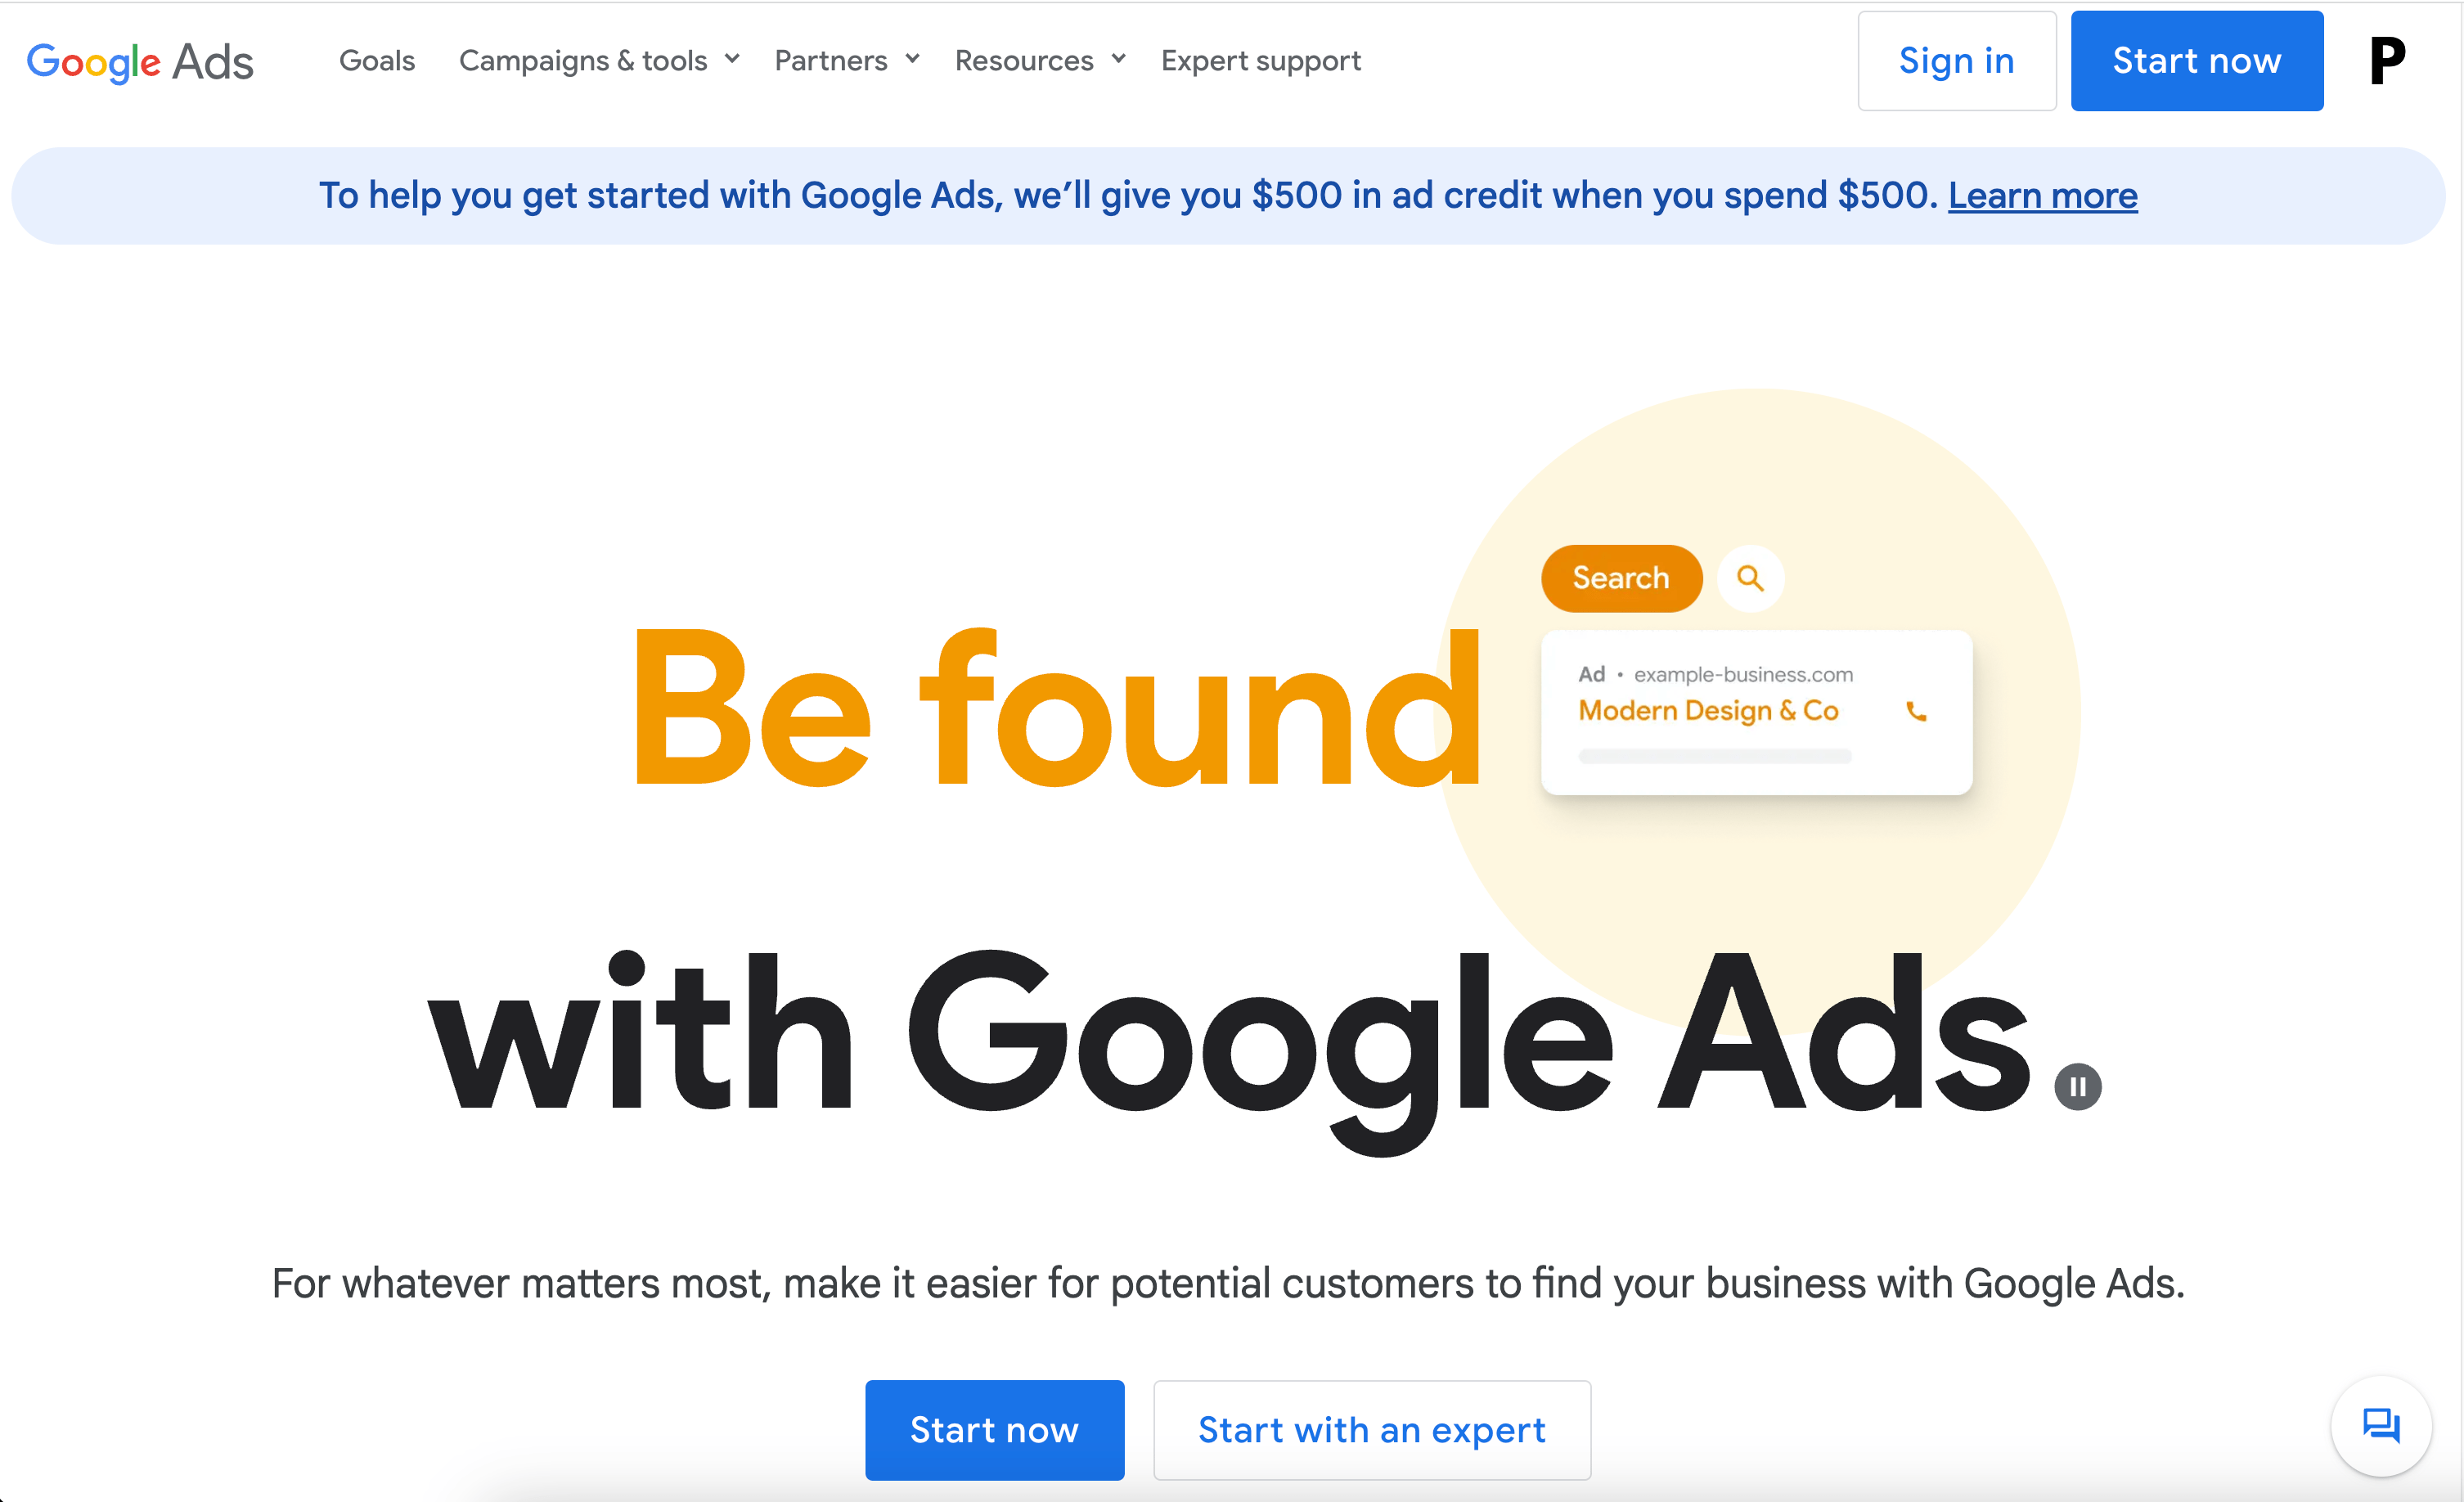 Image of Google Ads website